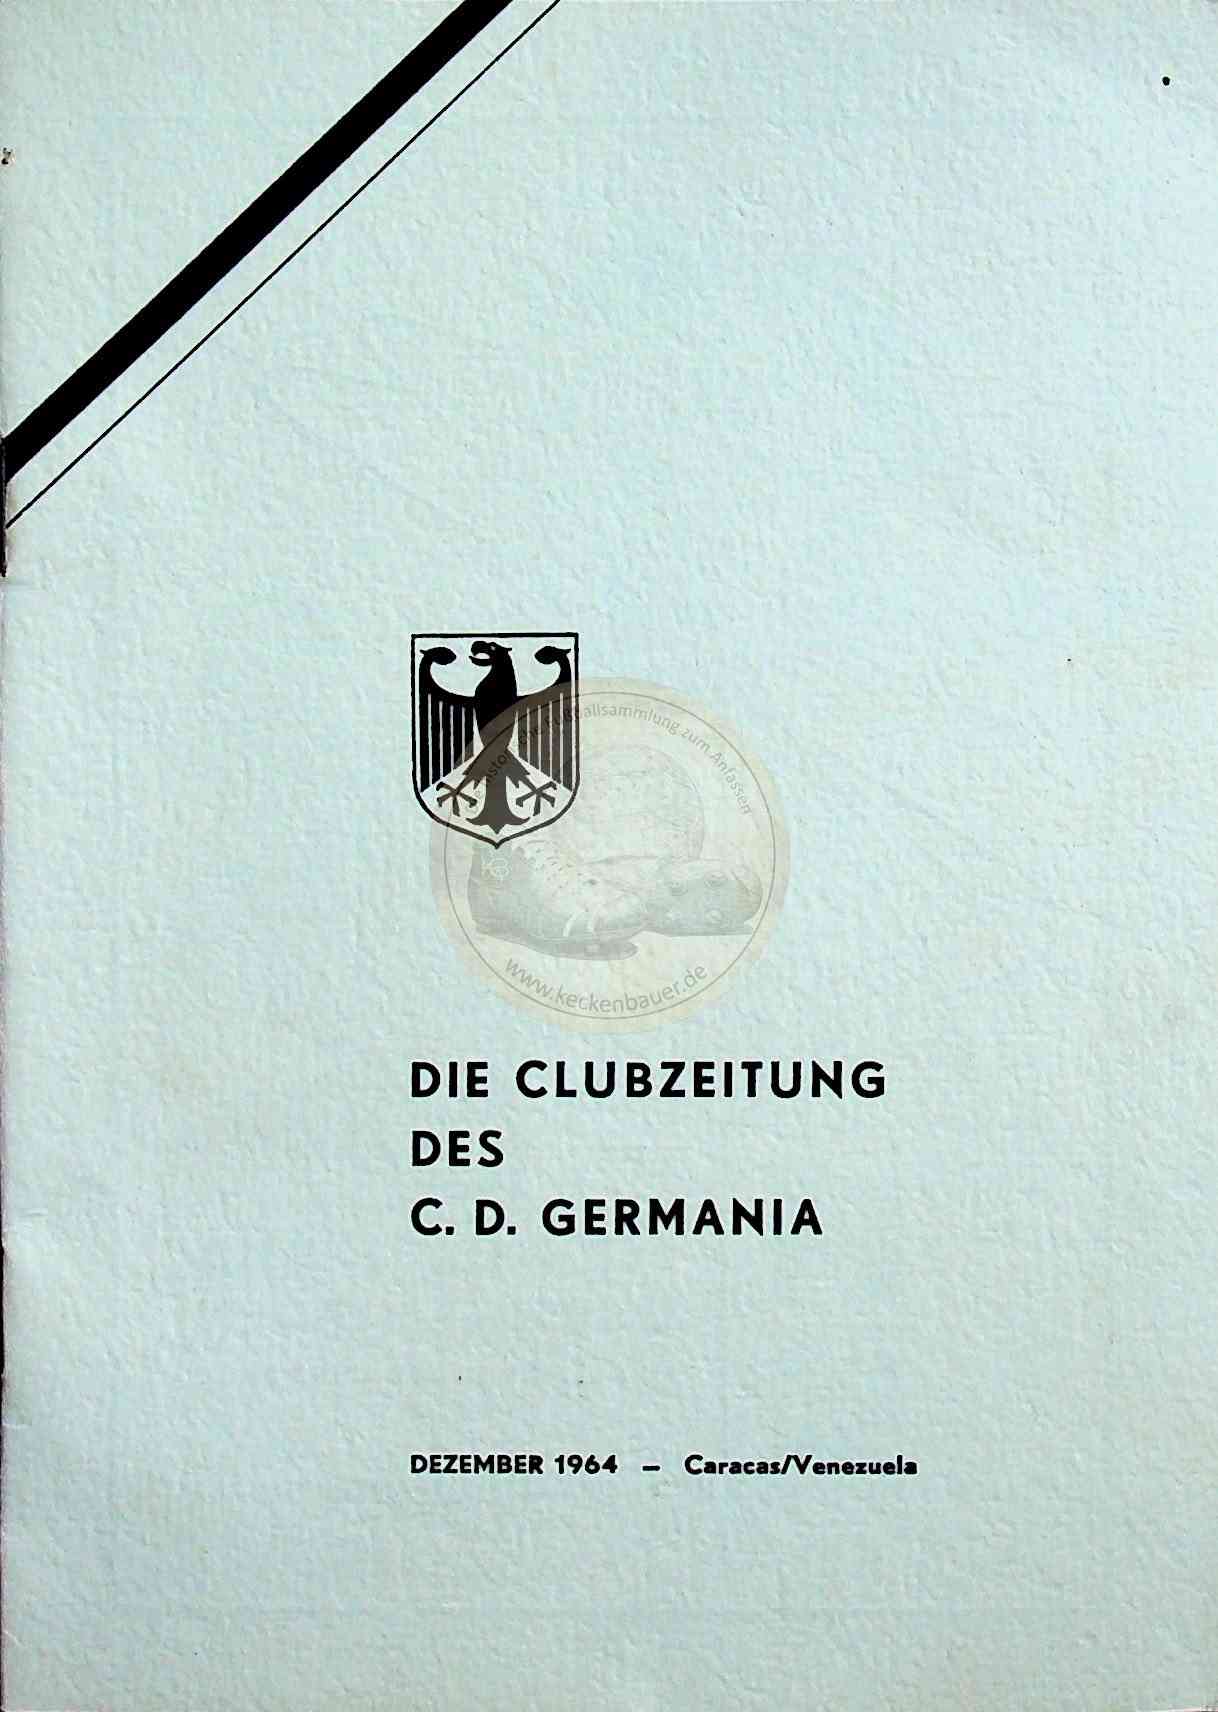 1964 Dezember Clubzeitung des C.D. Germania Caracas Venezuela